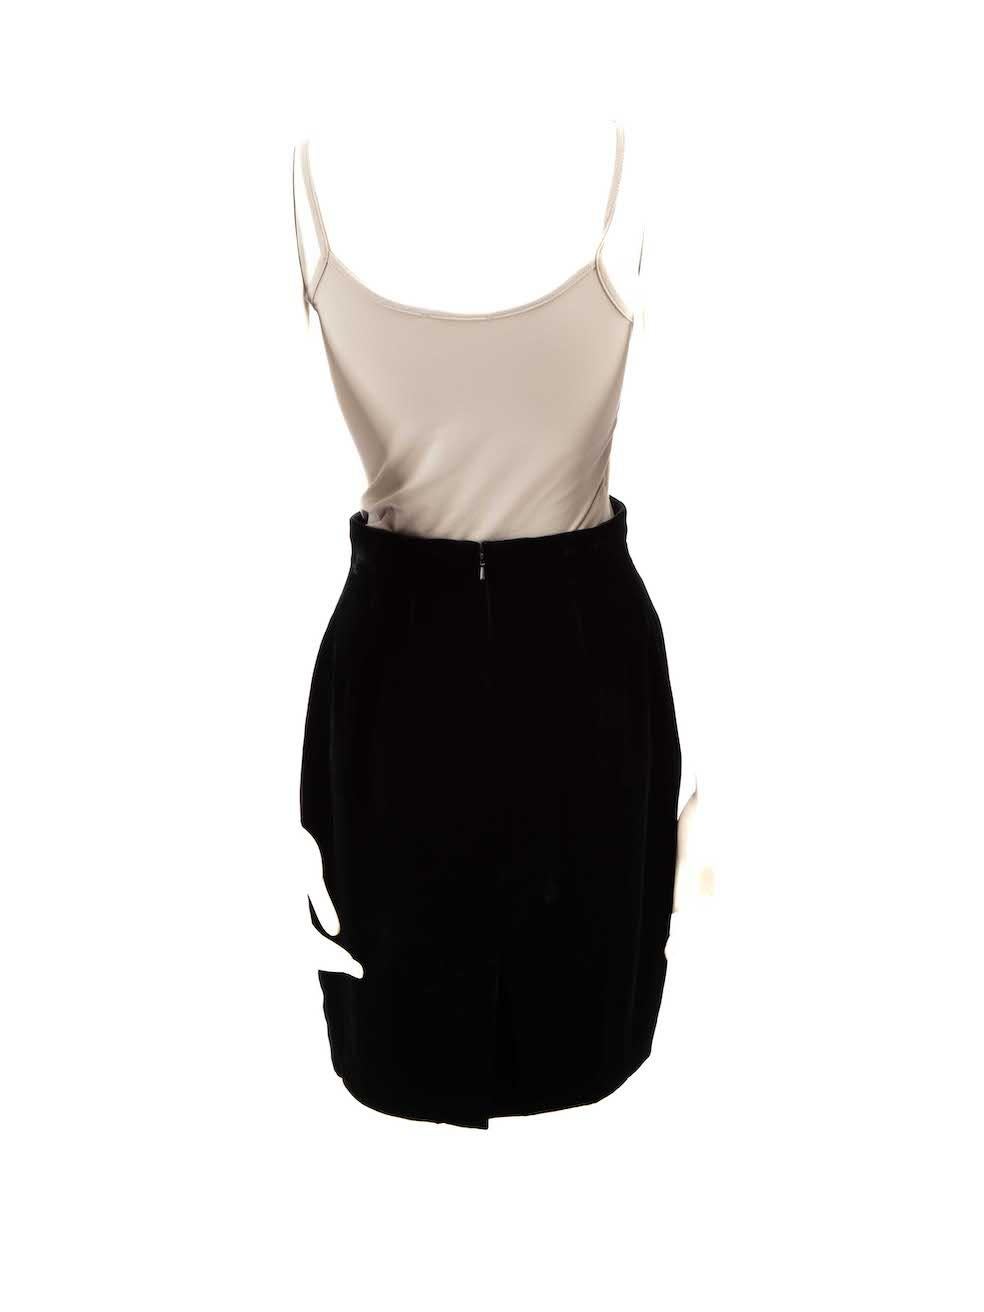 Emanuel Ungaro Black Velvet Knee Length Skirt Size M In Good Condition For Sale In London, GB